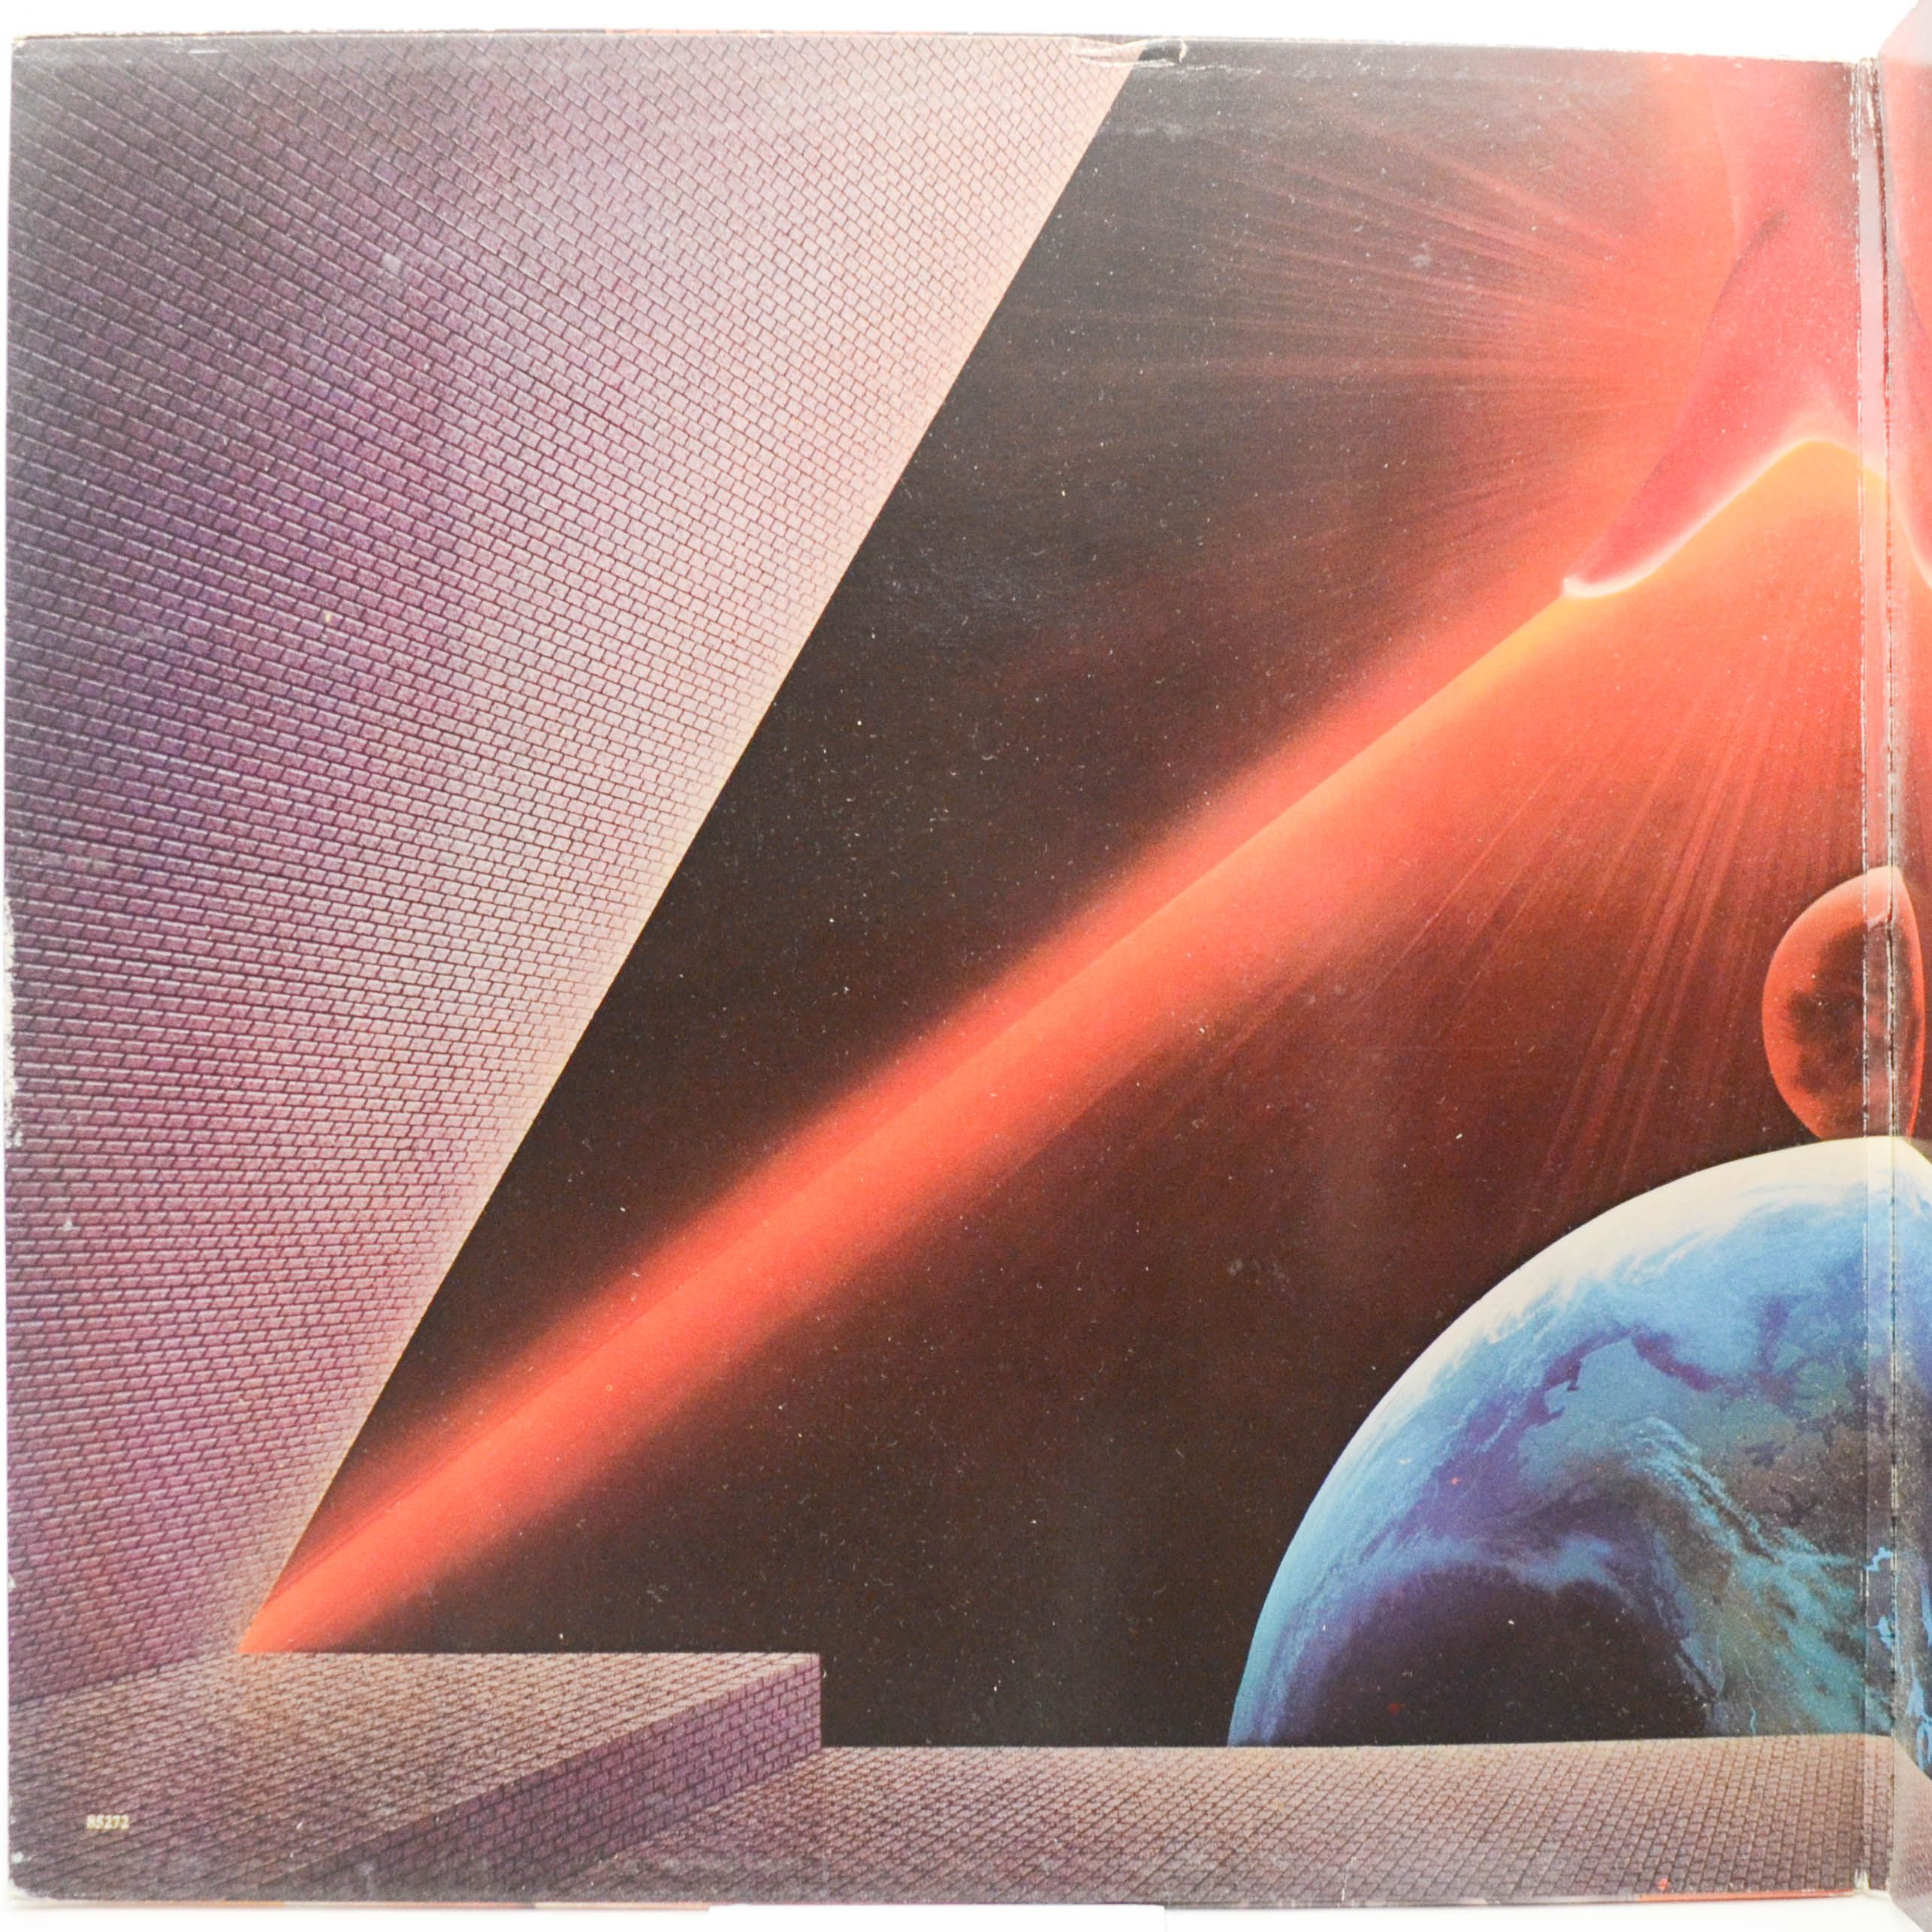 Earth, Wind & Fire — Raise!, 1981